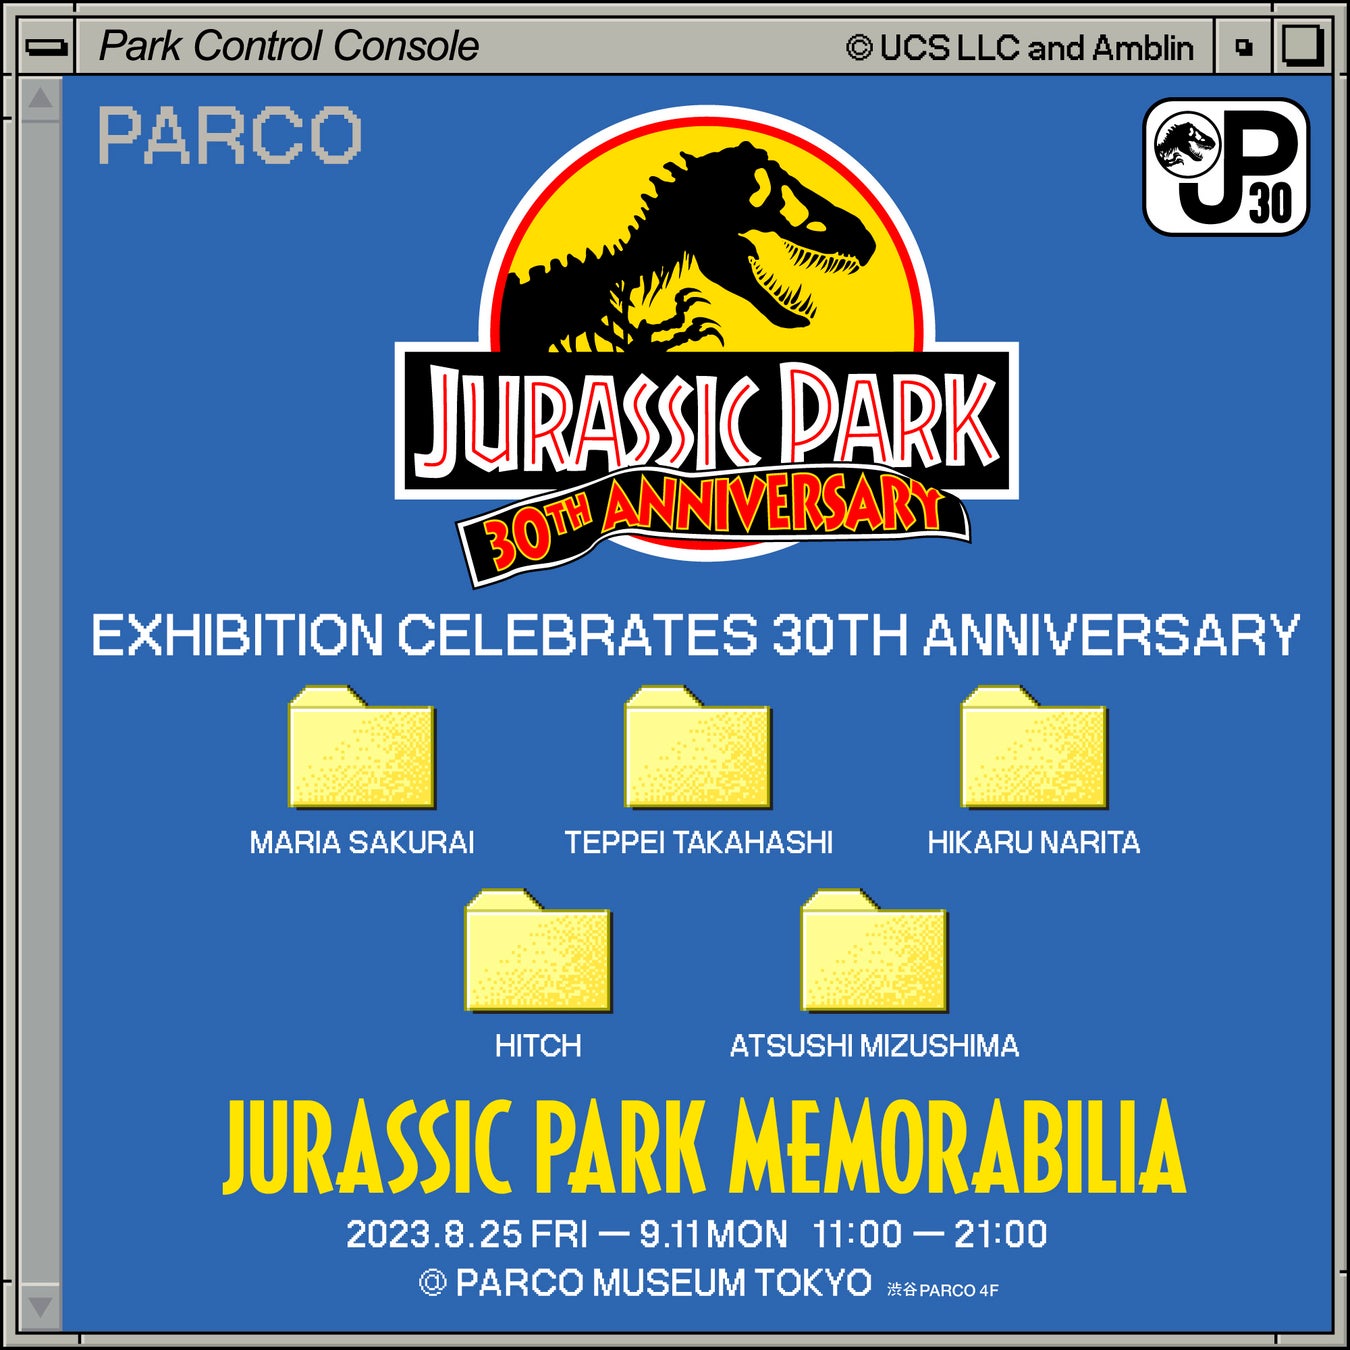 映画『ジュラシック・パーク』30周年を記念し、日本初のオフィシャルアートエキシビション「Jurassic Park Memorabilia」の開催が決定！